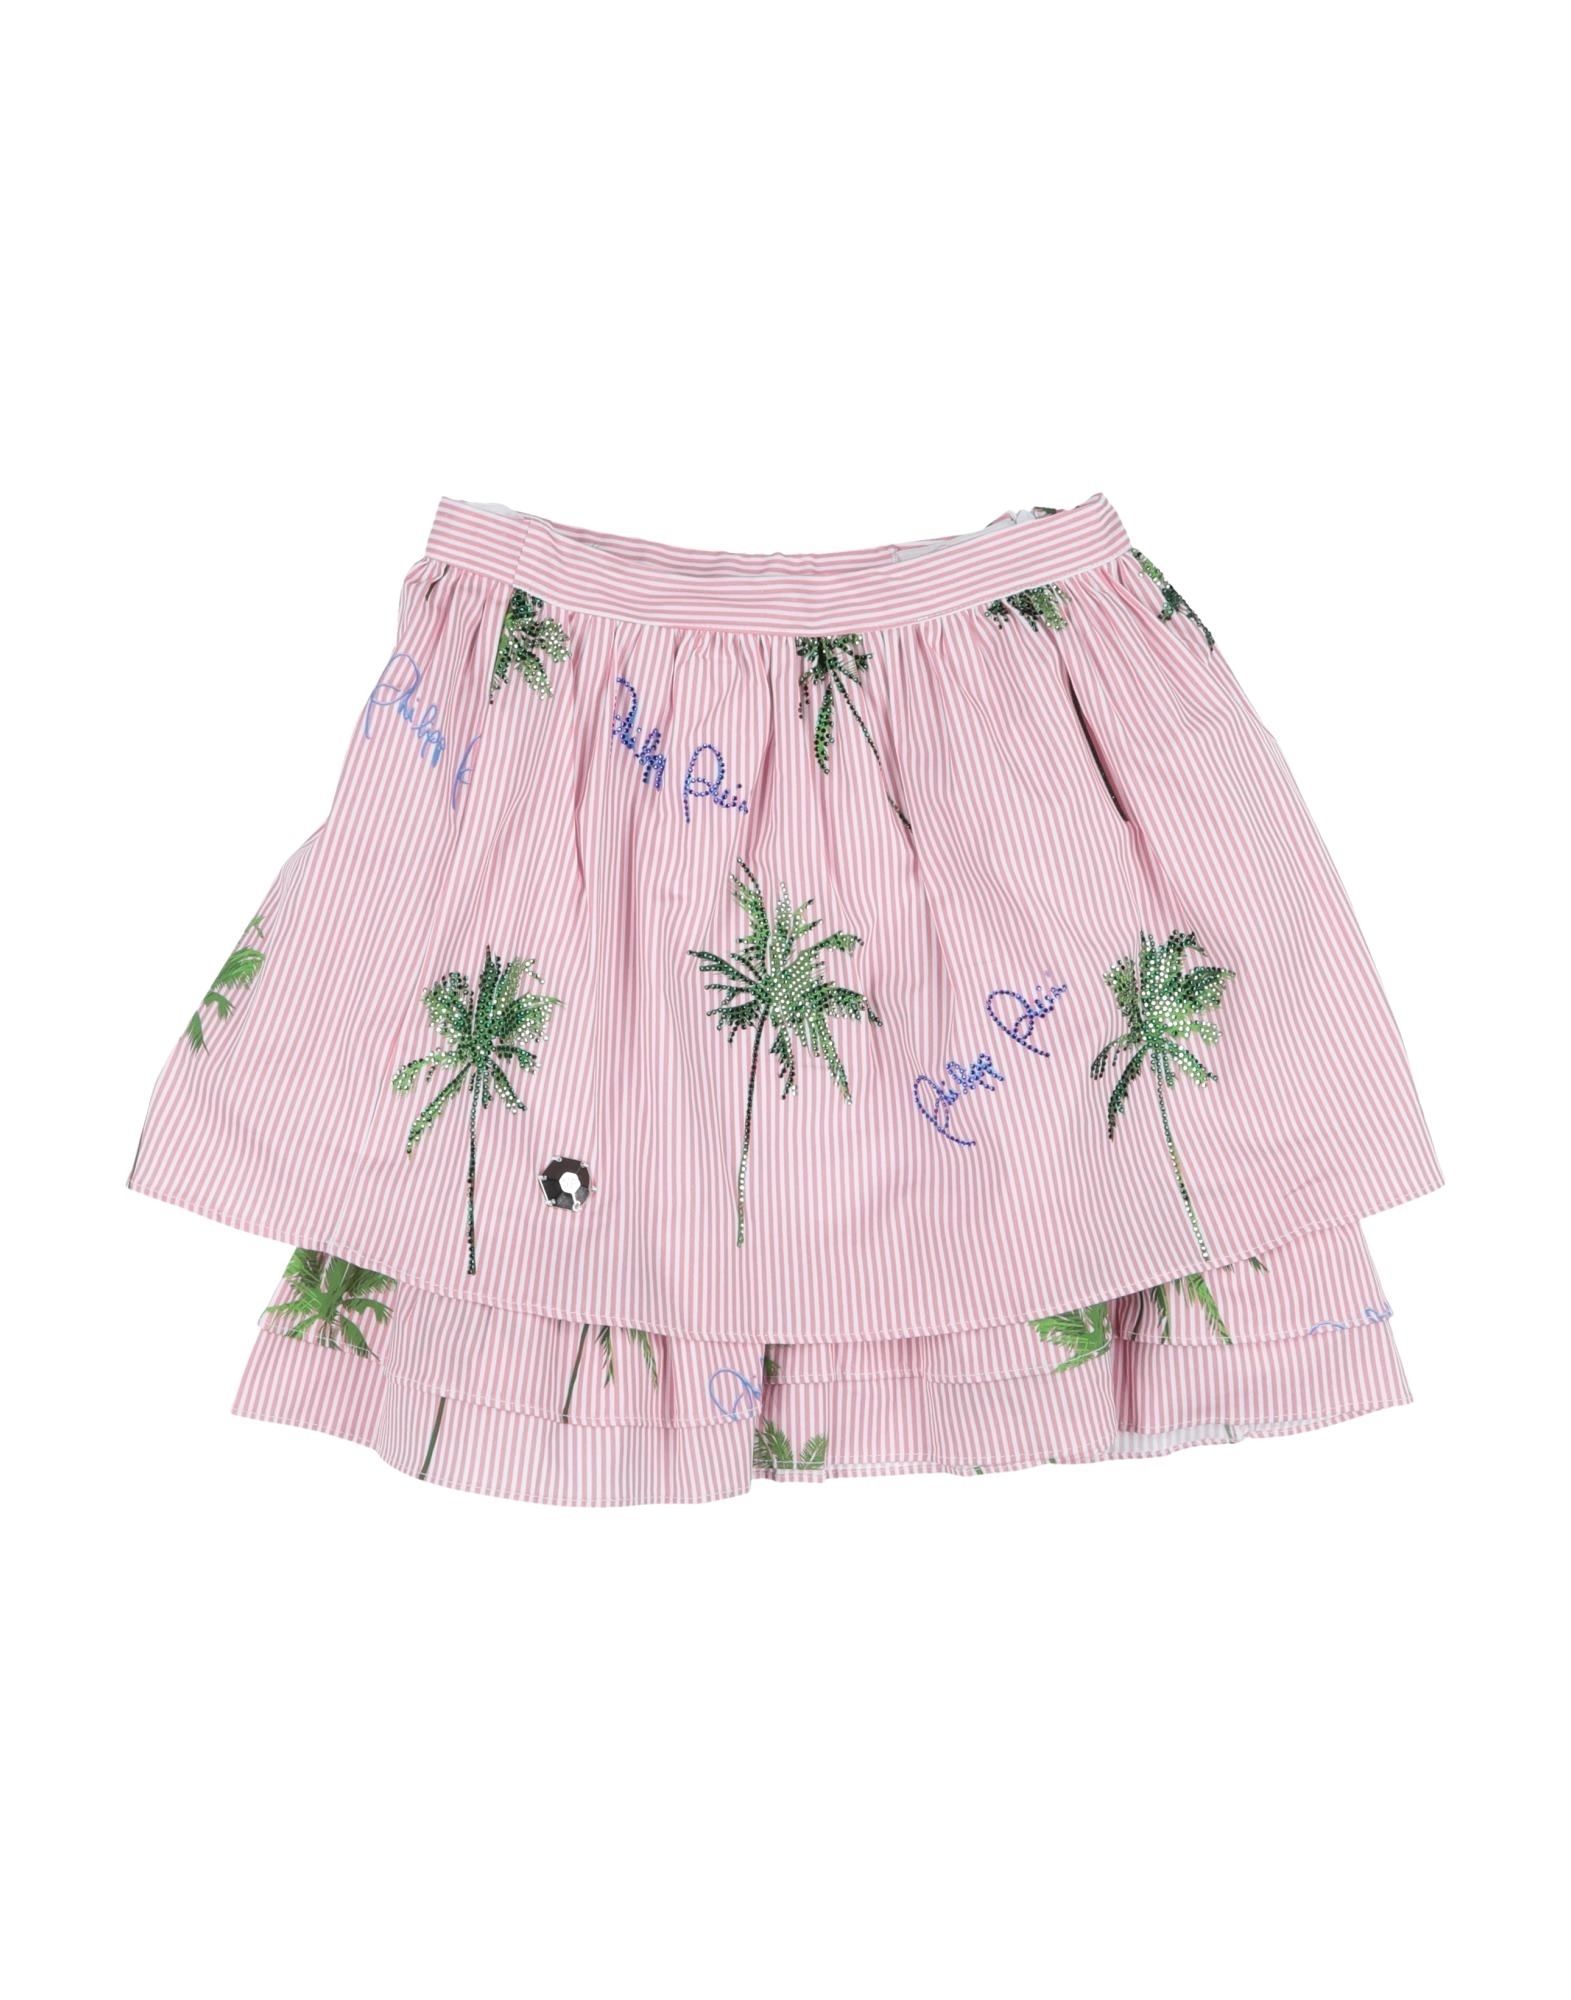 Philipp Plein Kids' Skirts In Pink